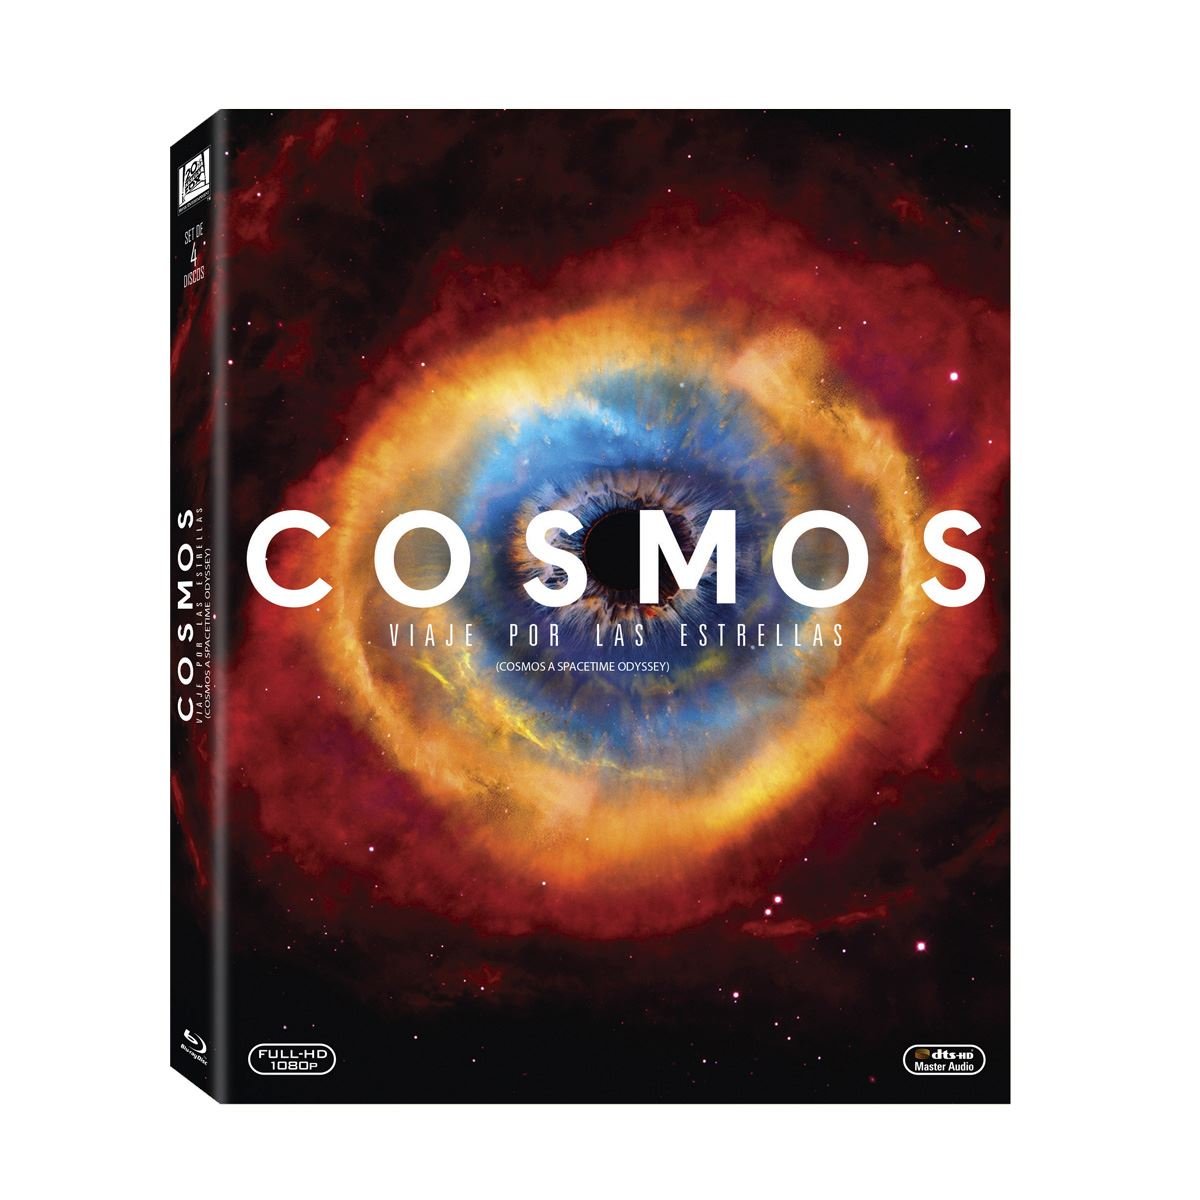 BR Cosmos A Spacetime Odyssey&#58; Primera Temporada